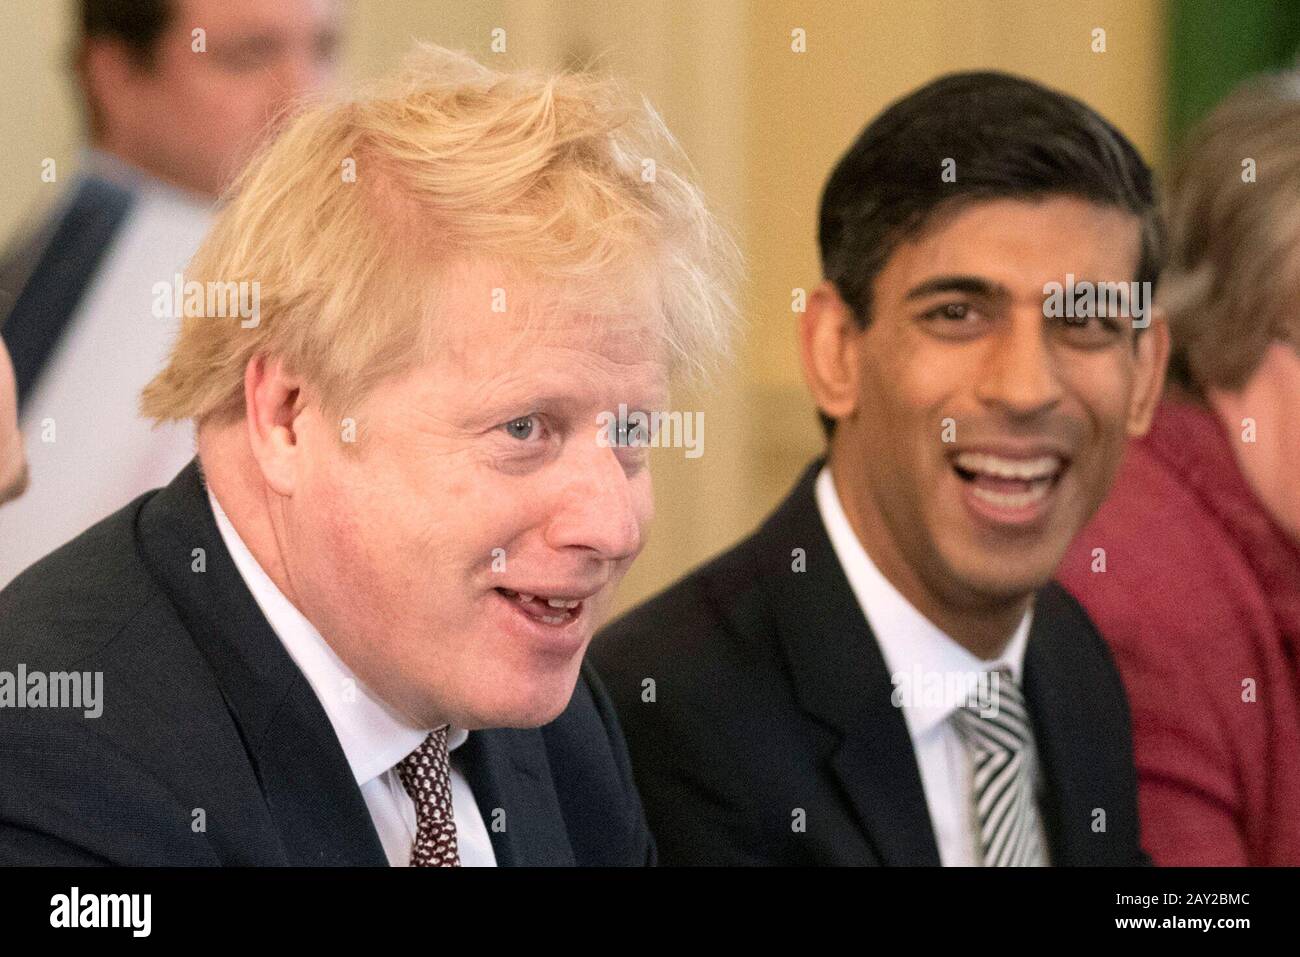 Il primo Ministro Boris Johnson, accanto al nuovo Cancelliere dello scacchiere Rishi Sunak (a destra), presiede il primo incontro del Gabinetto a 10 Downing Street, Londra, dal rimpasto. Foto Stock